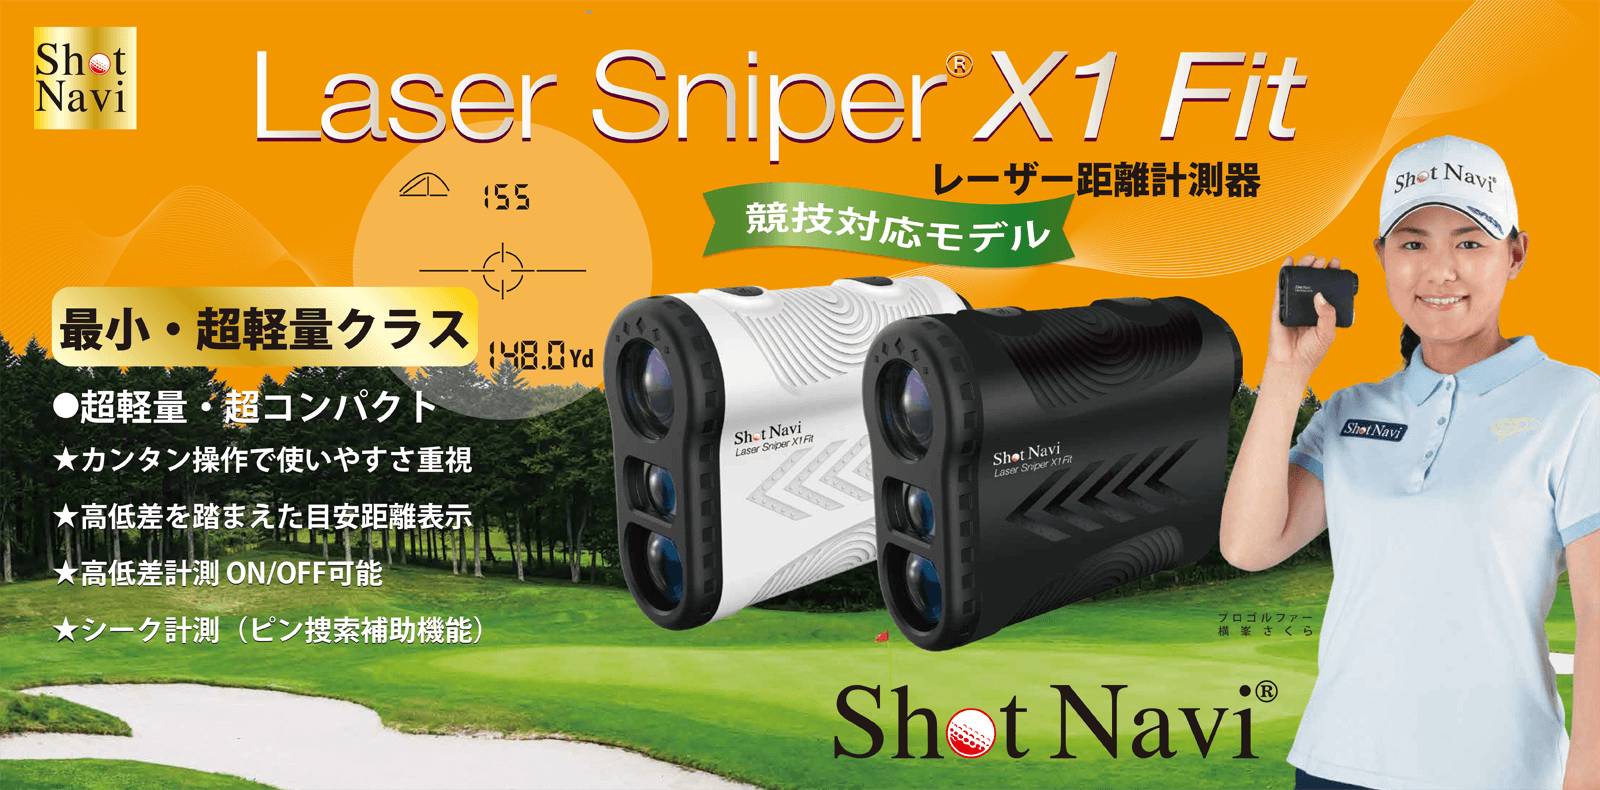 Shot Navi Laser Sniper X1 Fit